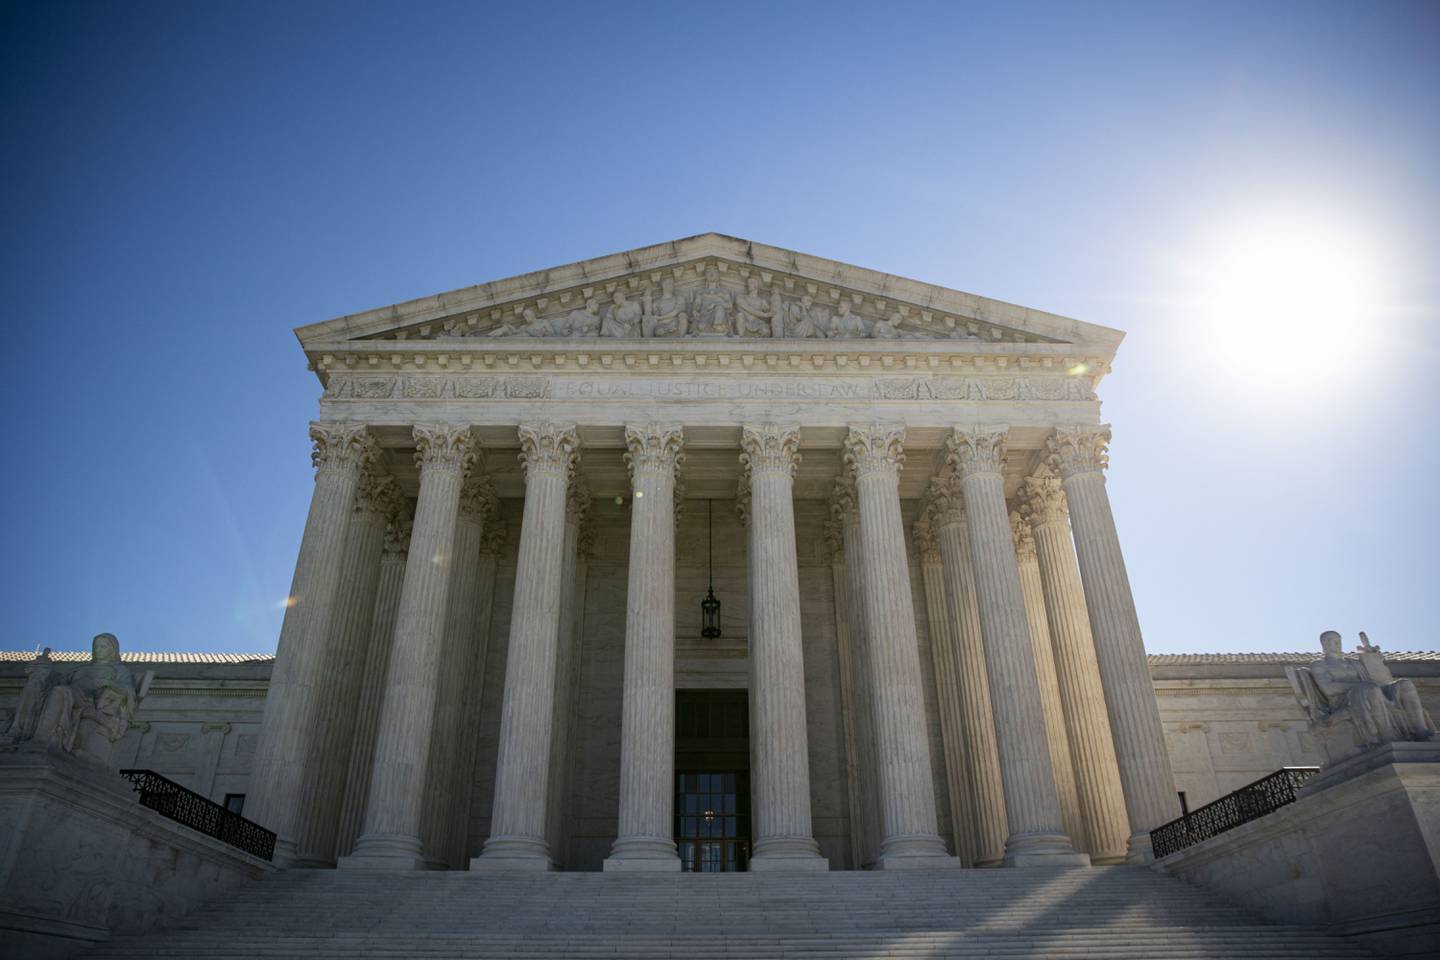 El Tribunal Supremo escuchó dos horas de argumentos en diciembre, y los seis jueces designados por los republicanos indicaron que permitirían que los estados comenzaran a prohibir el aborto mucho antes de lo que permiten ahora los precedentes del tribunal.